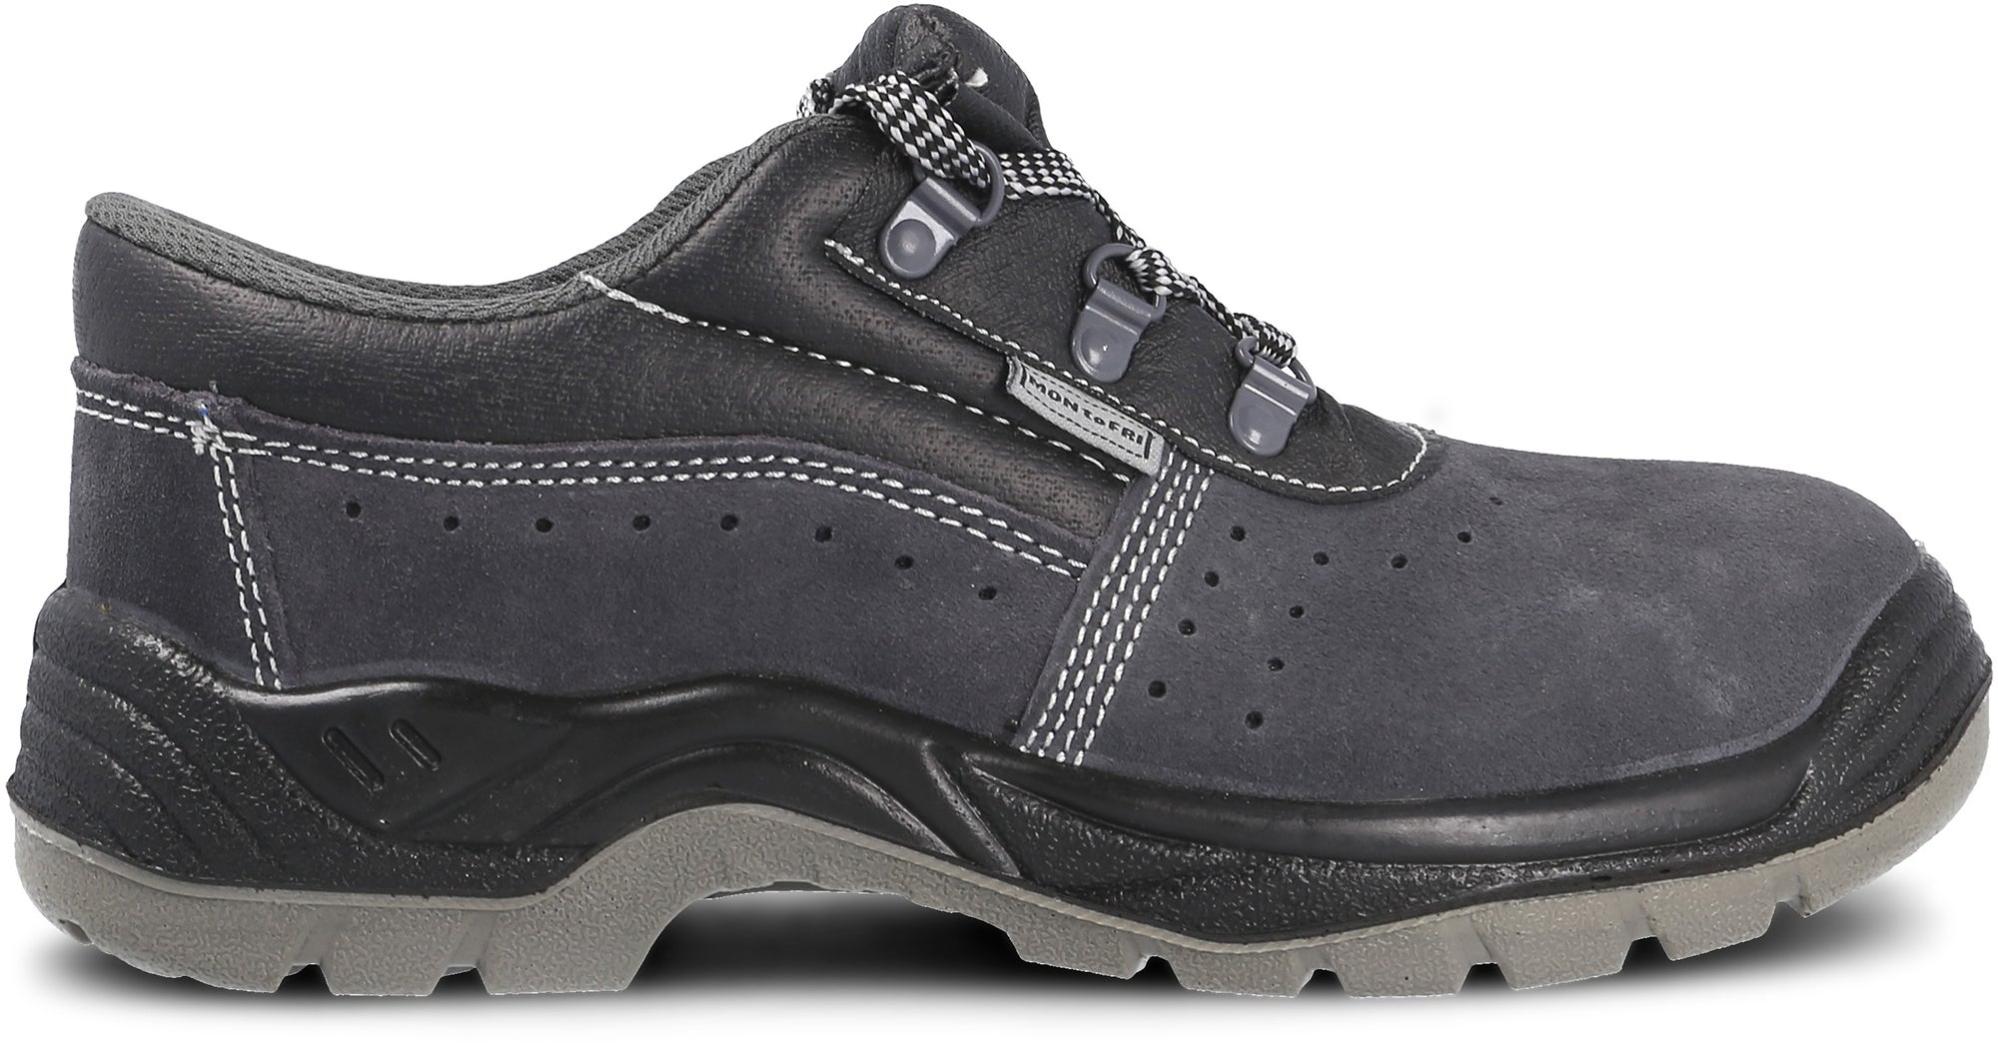 Zapato seguridad paredes, zp1002 serraje gris, s1p talla 43